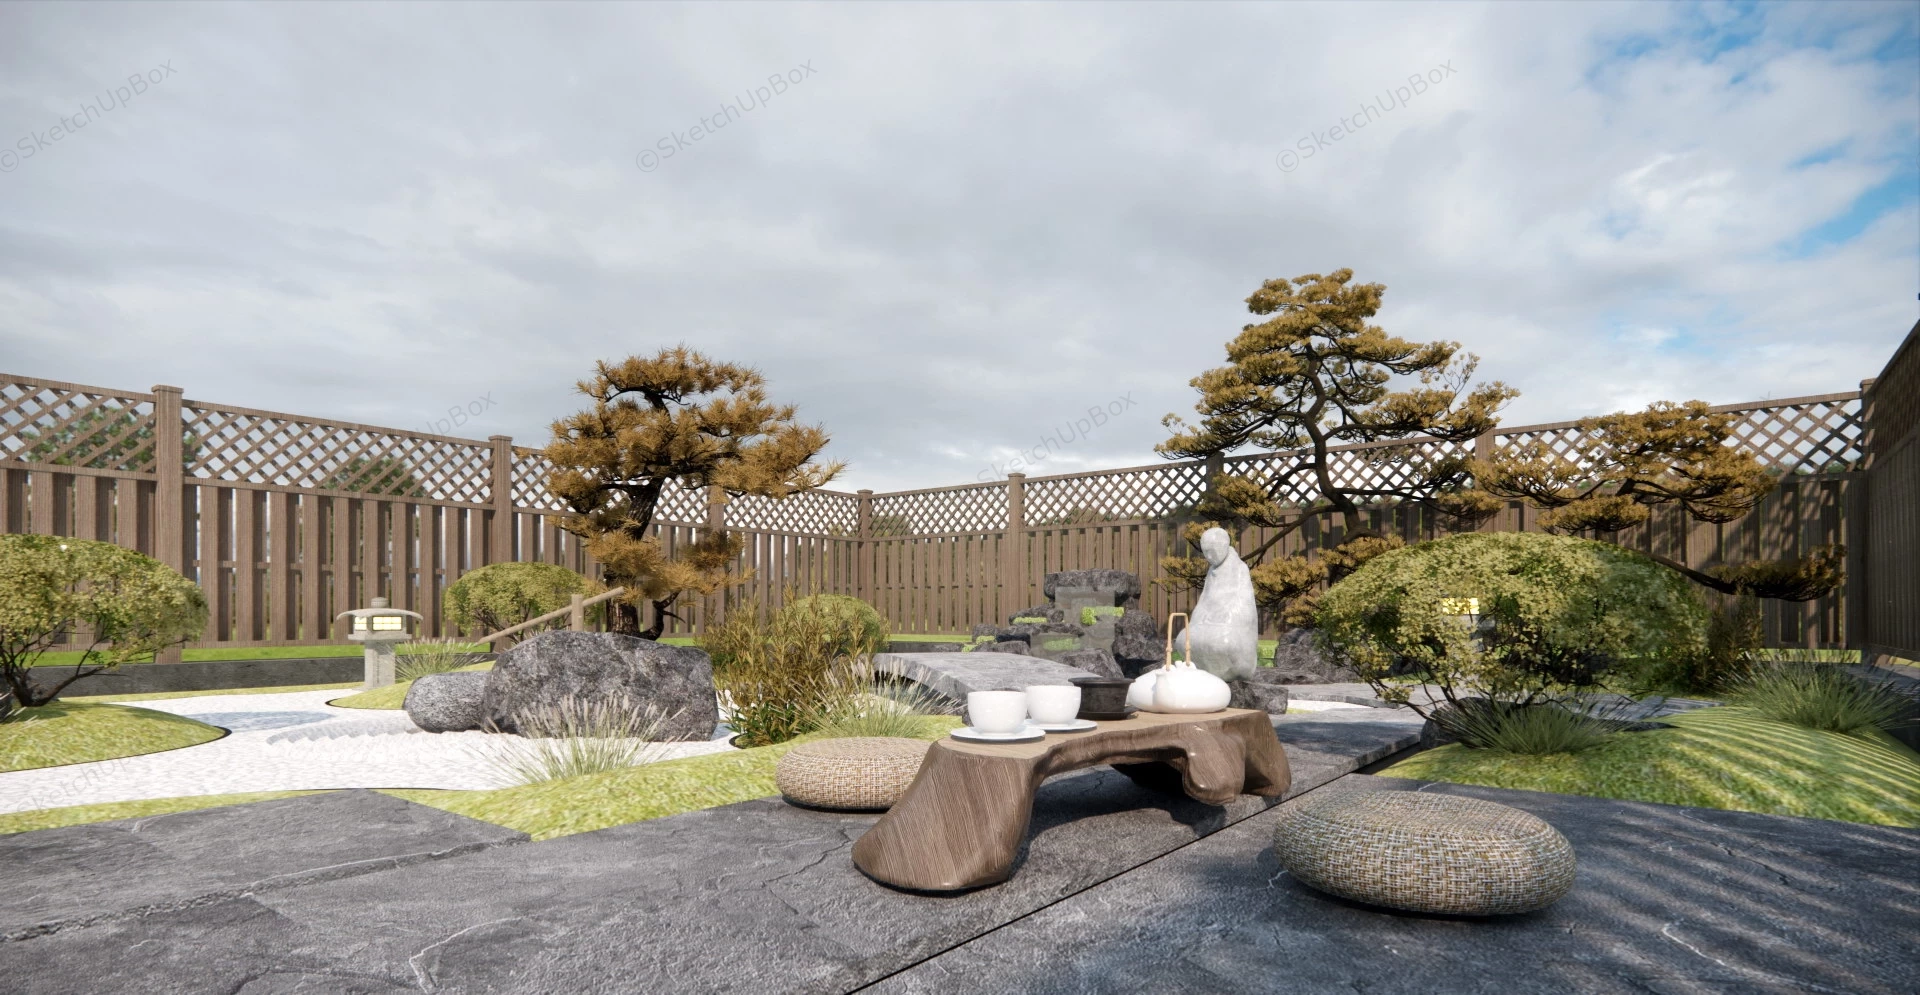 BackYard Zen Garden Design sketchup model preview - SketchupBox